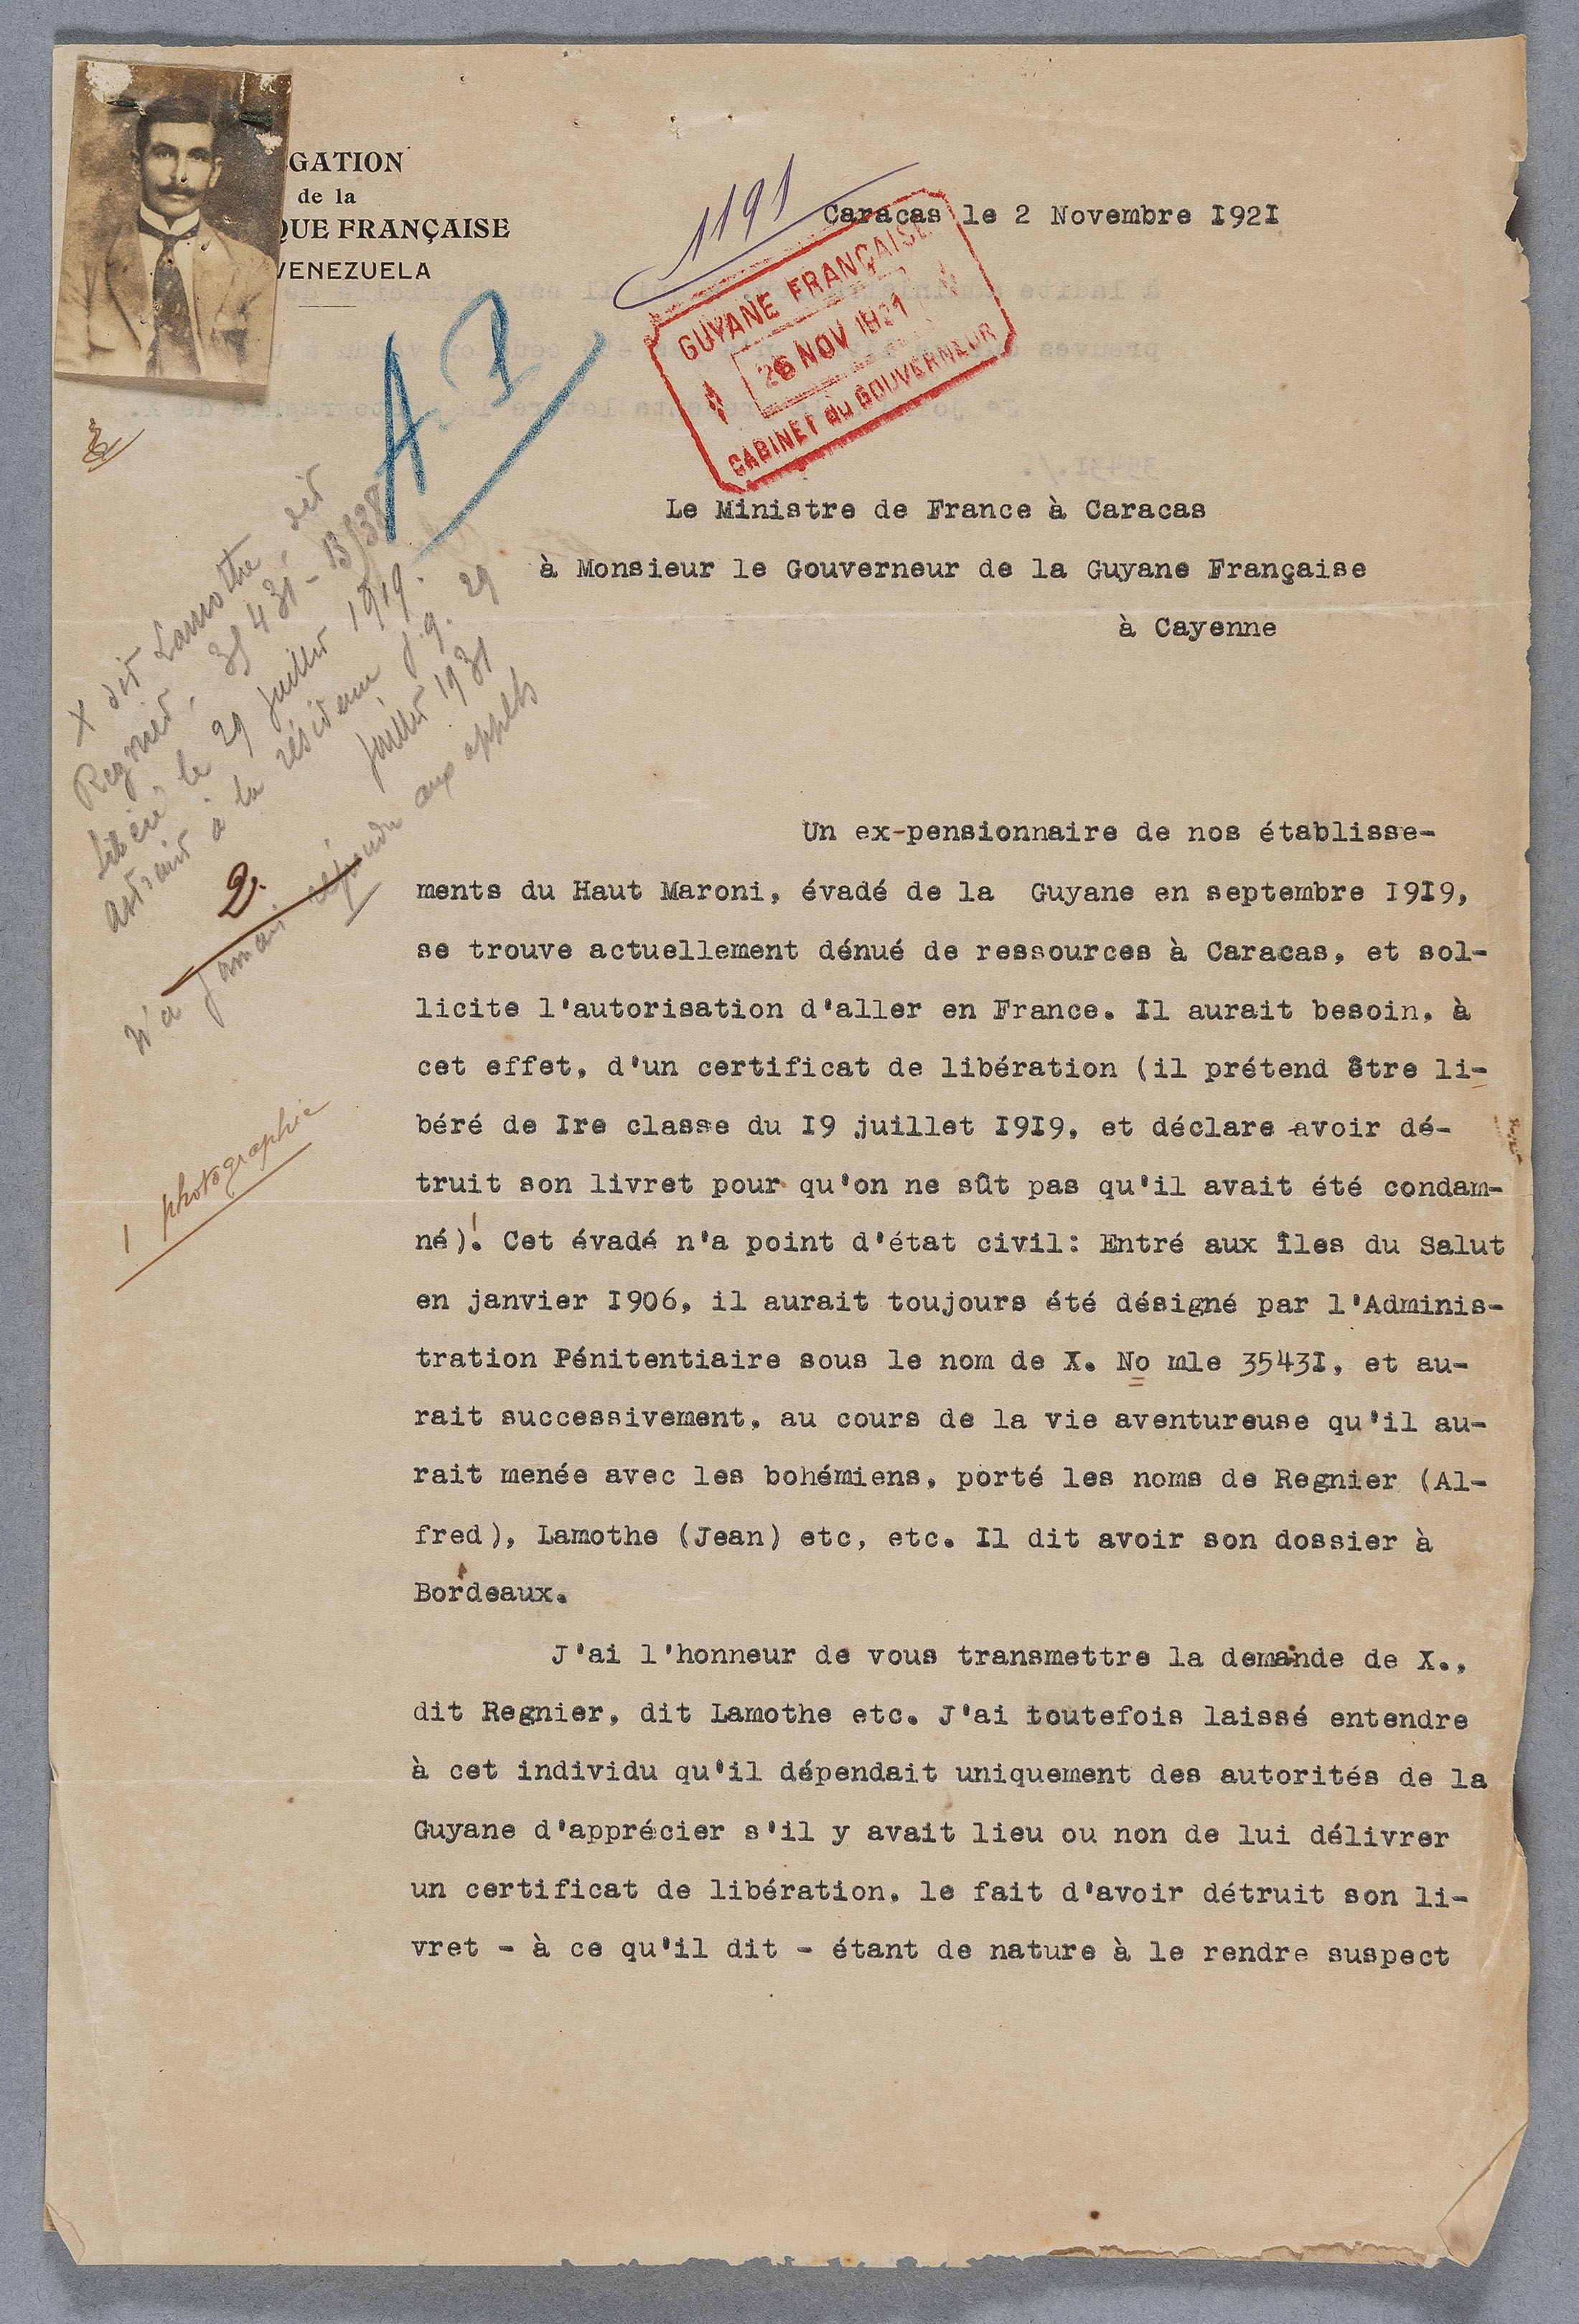 Courrier de la Délégation de la République française au Venezuela adressé au Gouverneur de la Guyane en date du 2 novembre 1921